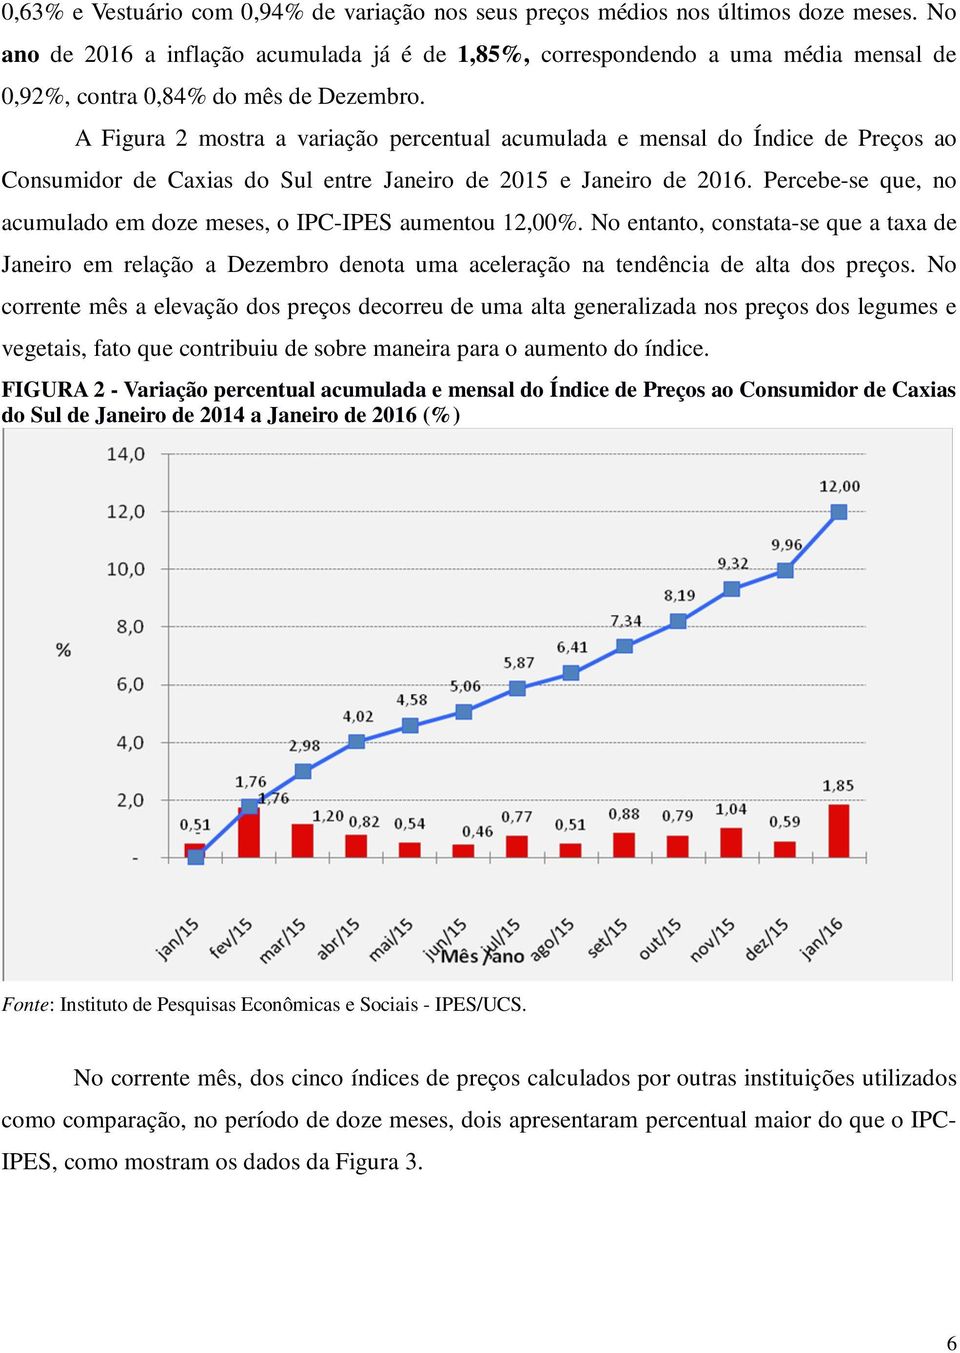 A Figura 2 mostra a variação percentual acumulada e mensal do Índice de Preços ao Consumidor de Caxias do Sul entre Janeiro de 2015 e Janeiro de 2016.